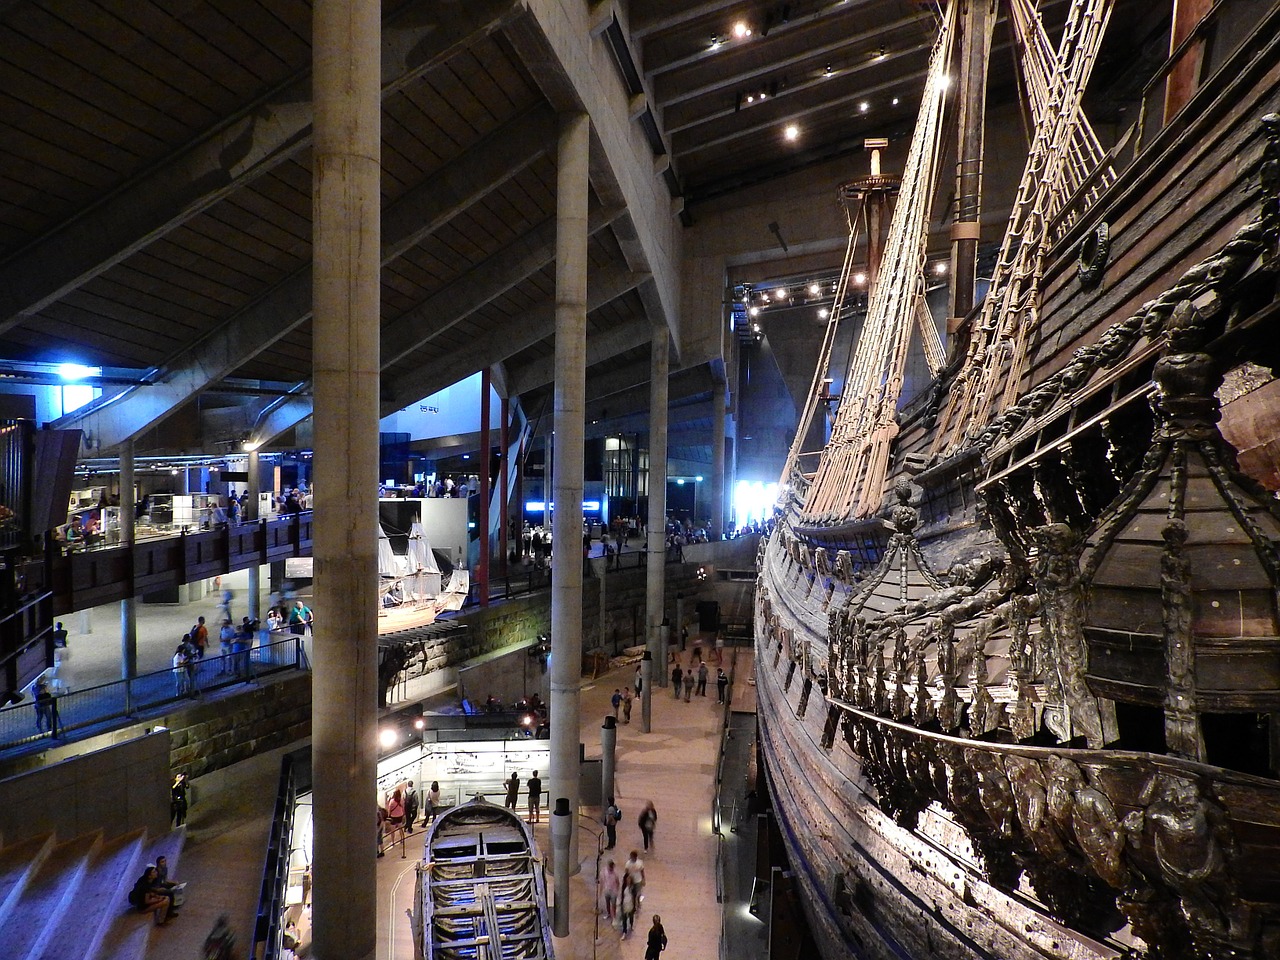 Vasa Museum, Stockholm